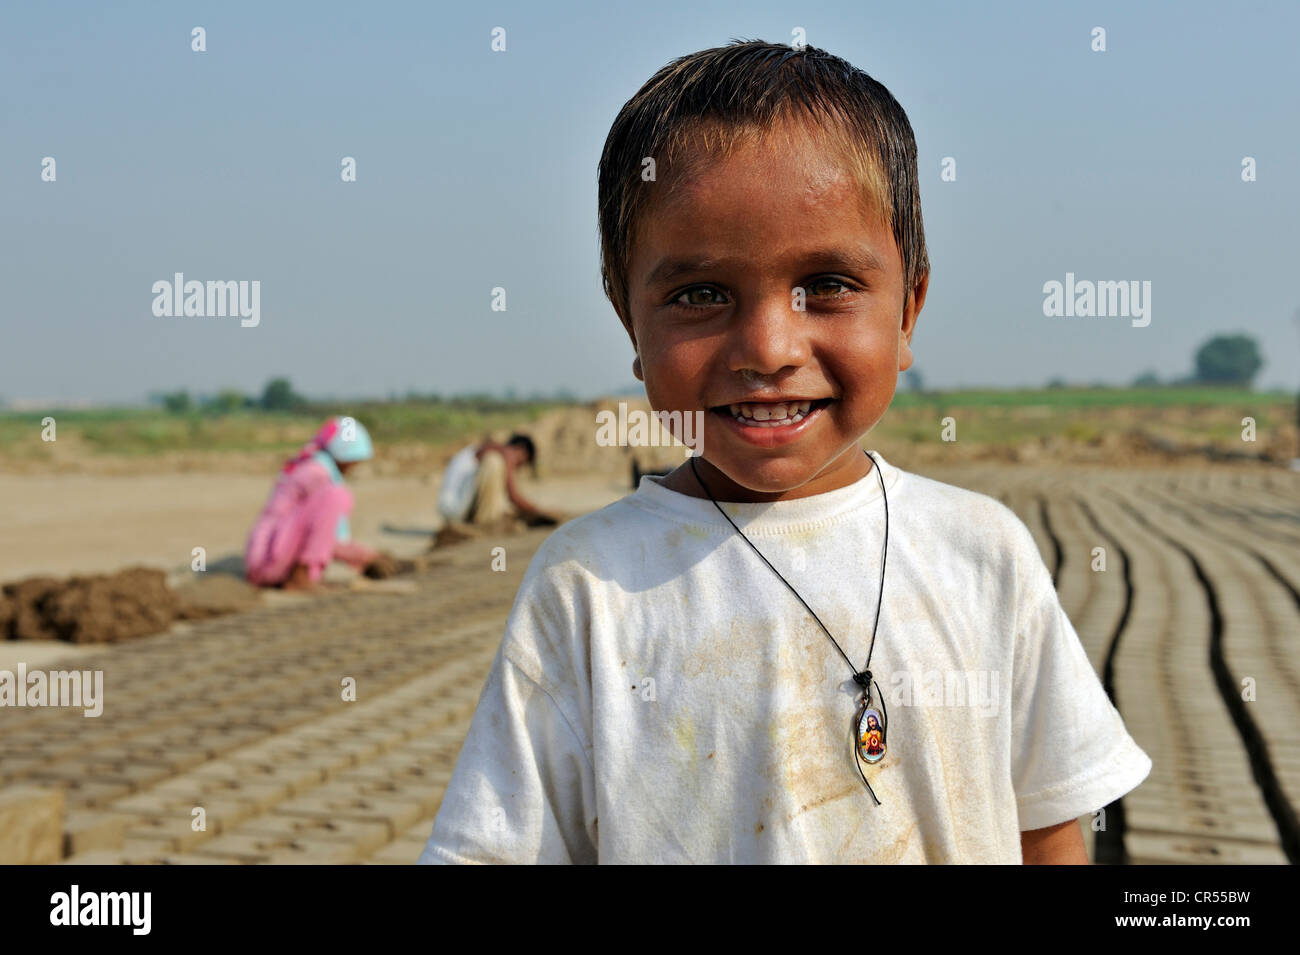 Smiling boy dans une briqueterie, la plupart des travailleurs appartiennent à la minorité chrétienne au Pakistan et sont particulièrement touchés Banque D'Images